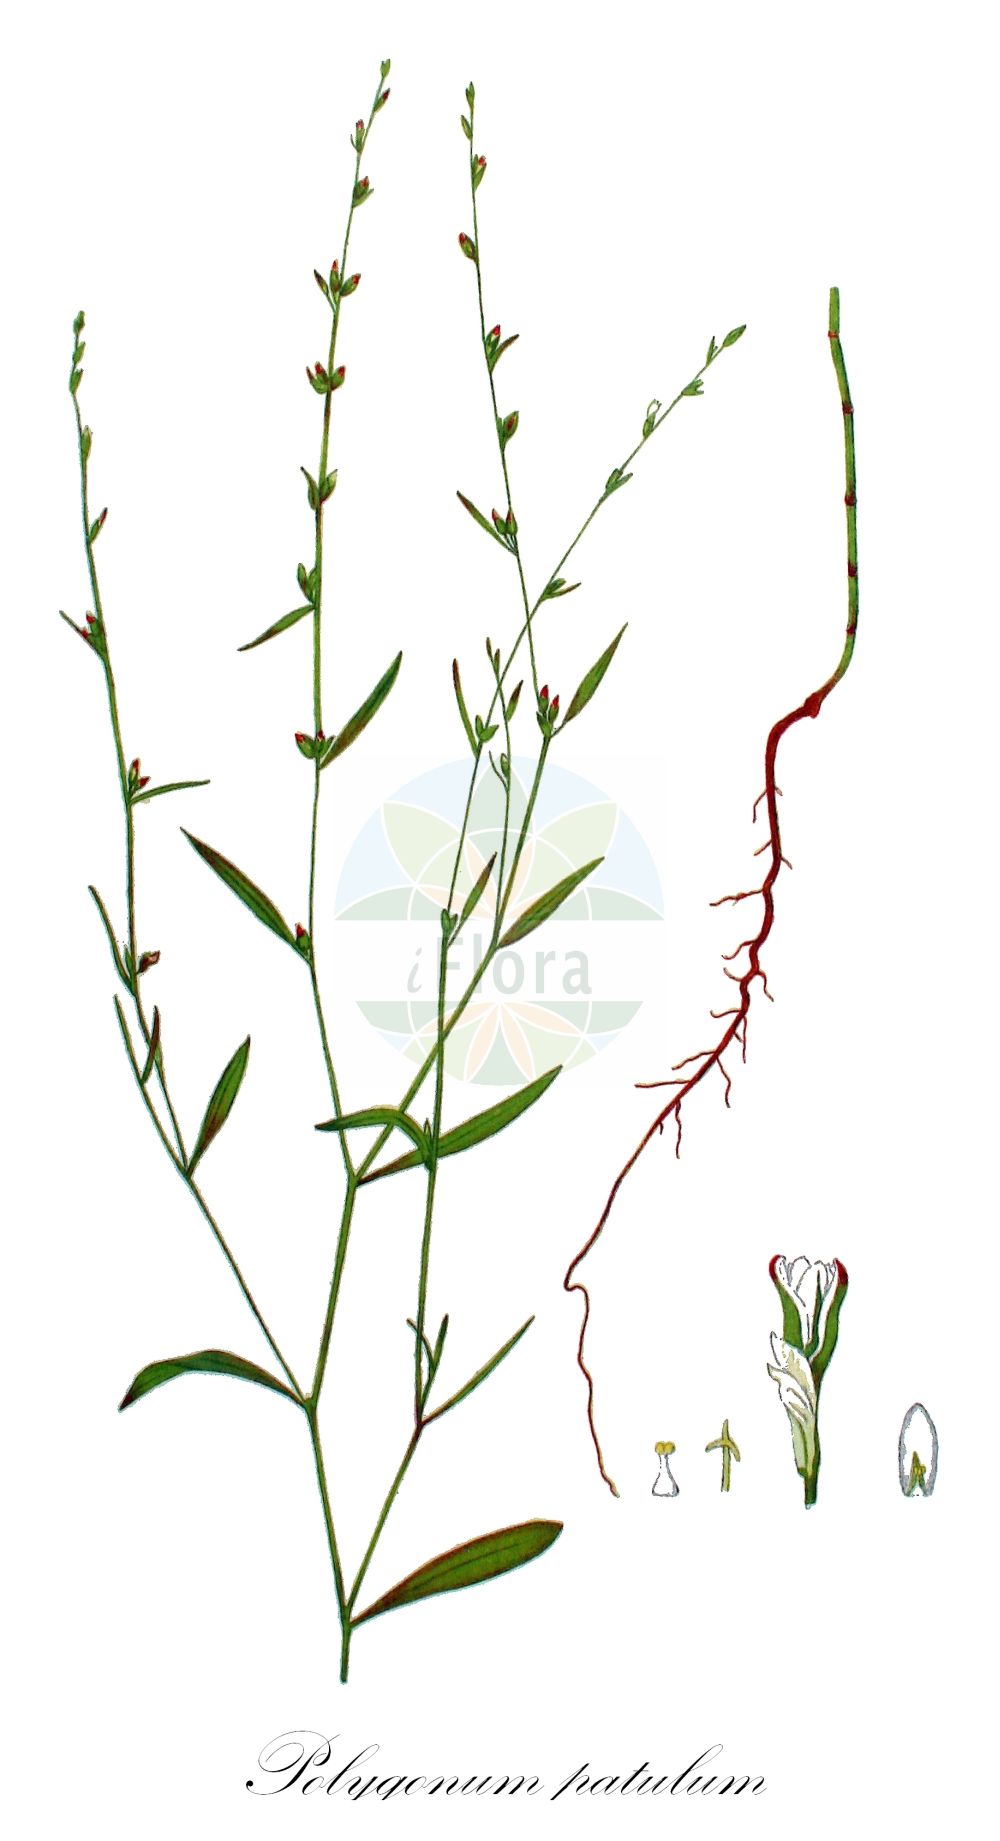 Historische Abbildung von Polygonum patulum (Red Knotgrass). Das Bild zeigt Blatt, Bluete, Frucht und Same. ---- Historical Drawing of Polygonum patulum (Red Knotgrass). The image is showing leaf, flower, fruit and seed.(Polygonum patulum,Red Knotgrass,Polygonum cretaceum,Polygonum gracilius,Polygonum kotovii,Polygonum patulum,Polygonum spectabile,Polygonum,Knöterich,Knotgrass,Polygonaceae,Knöterichgewächse,Knotgrass family,Blatt,Bluete,Frucht,Same,leaf,flower,fruit,seed,Kops (1800-1934))